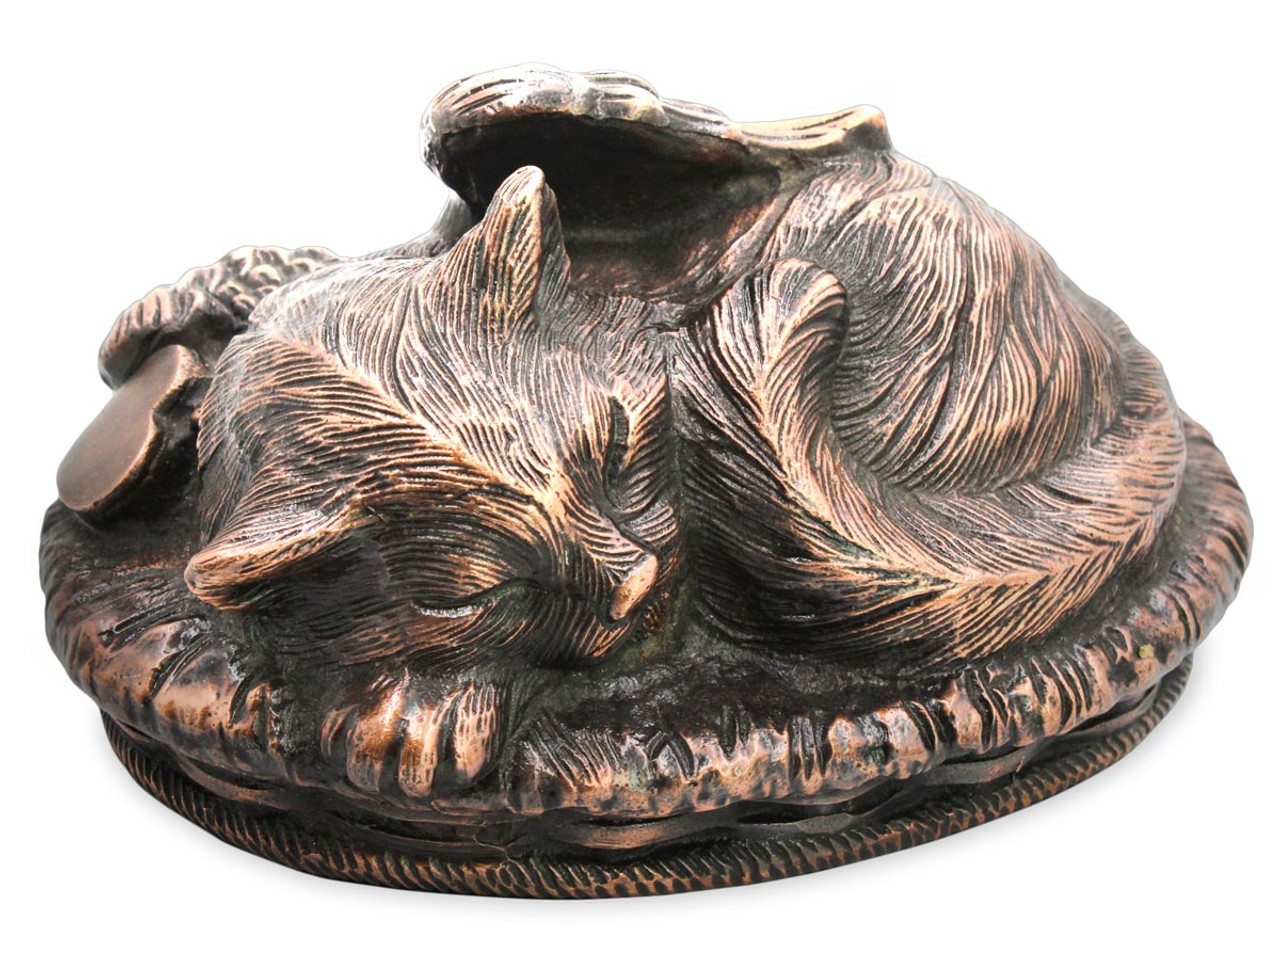 Pet Memorial Angel Cat Sleeping in Basket Cremation Urn Bronze